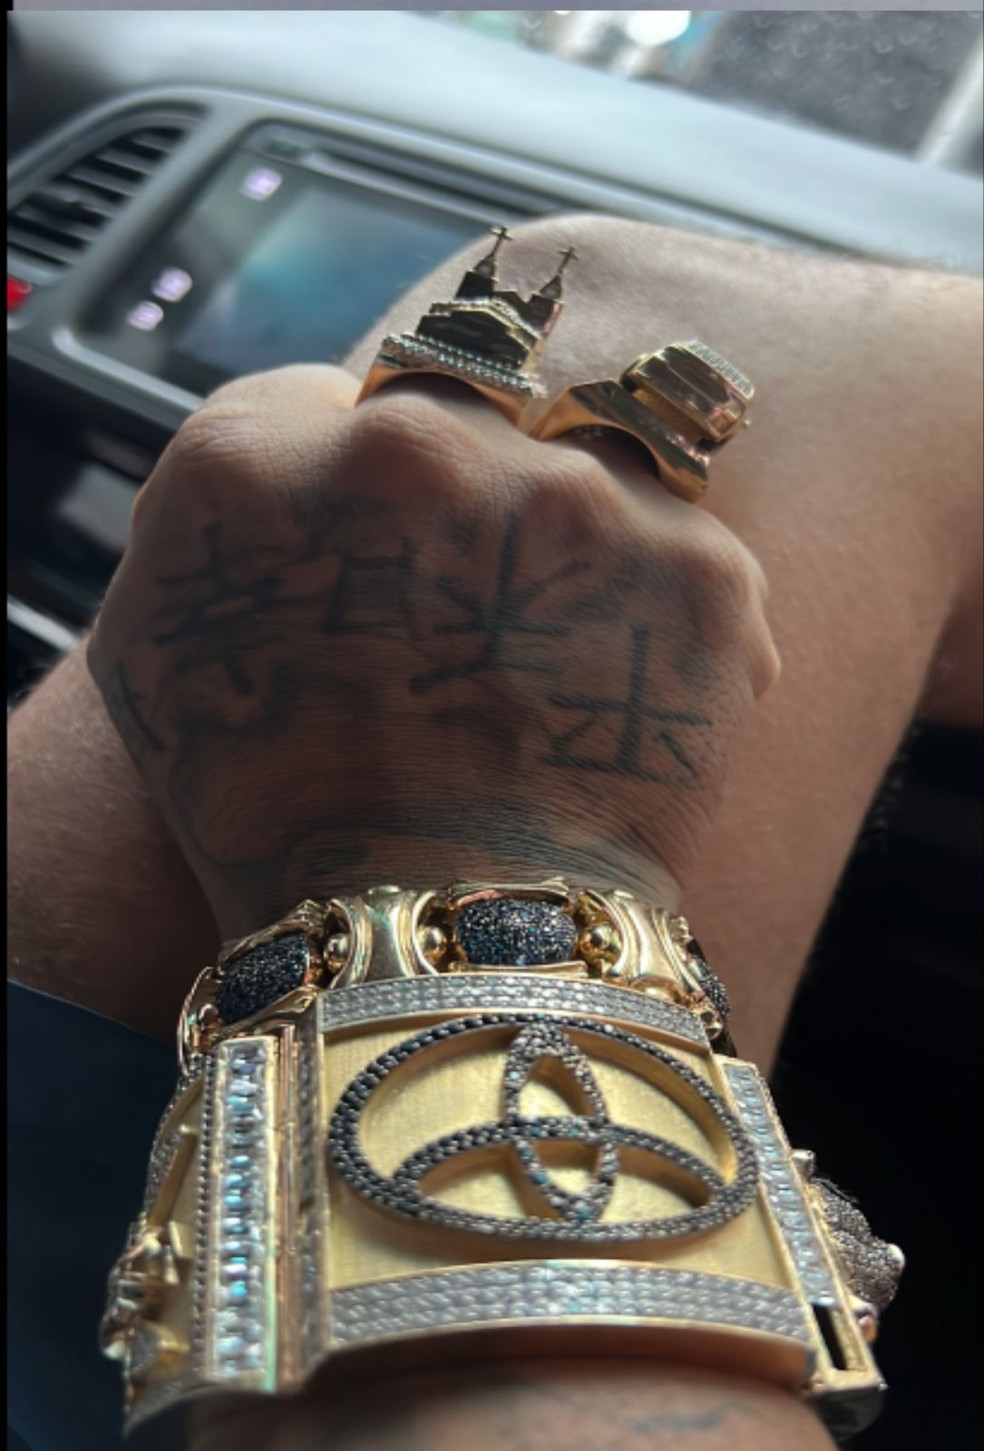 Traficante Corolla ostenta bracelete e anéis de ouro em fotos — Foto: Reprodução